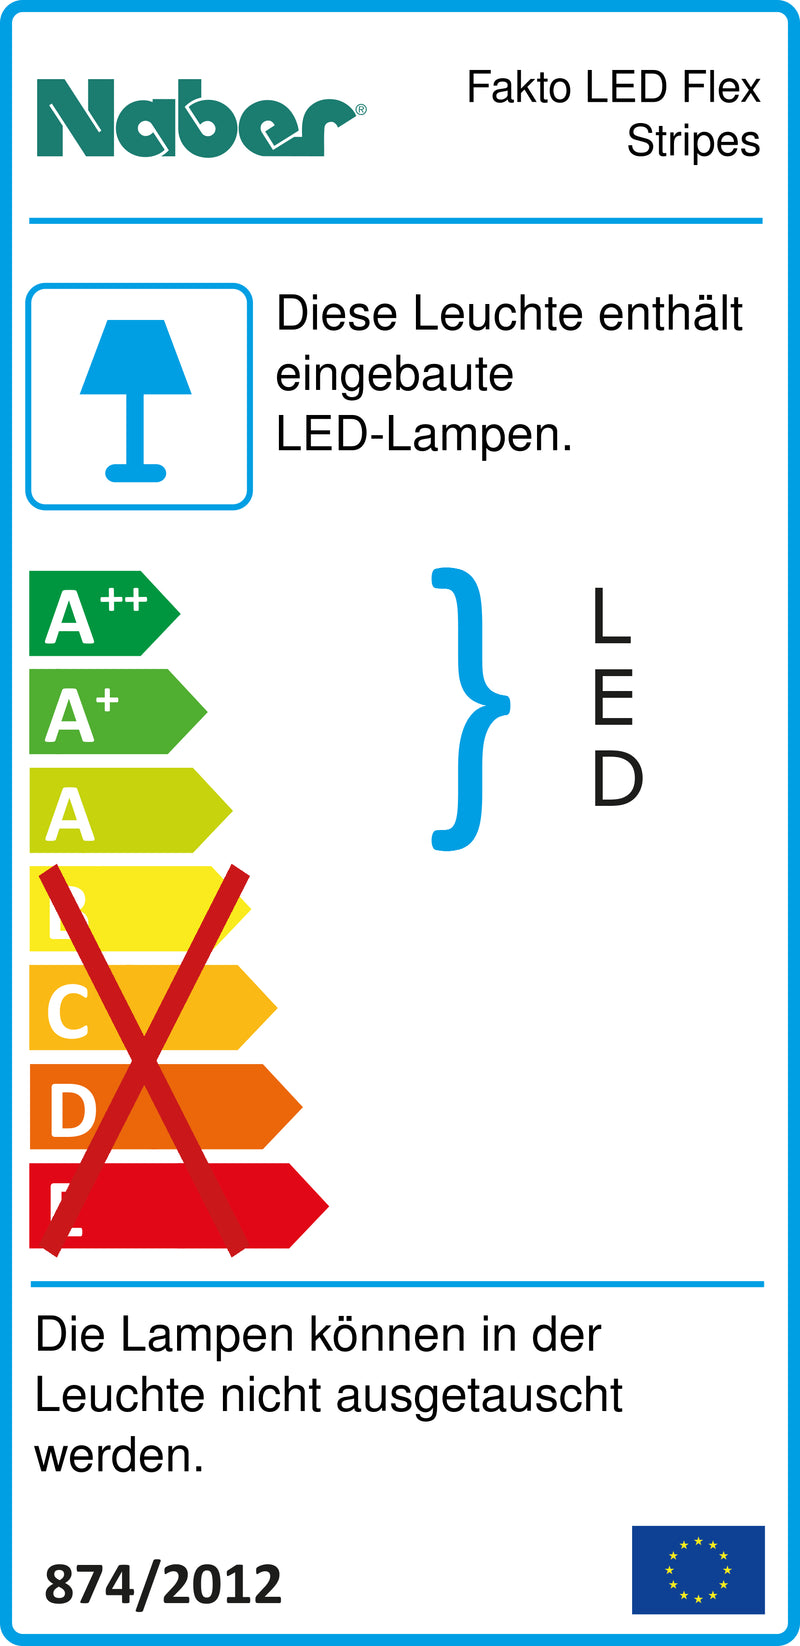 E-Label zu Zeichnung zu Fakto LED Flex Stripes als Variante L 1200 mm, 6,0 W von Naber GmbH in der Kategorie Lichttechnik in Österreich auf conceptshop.at